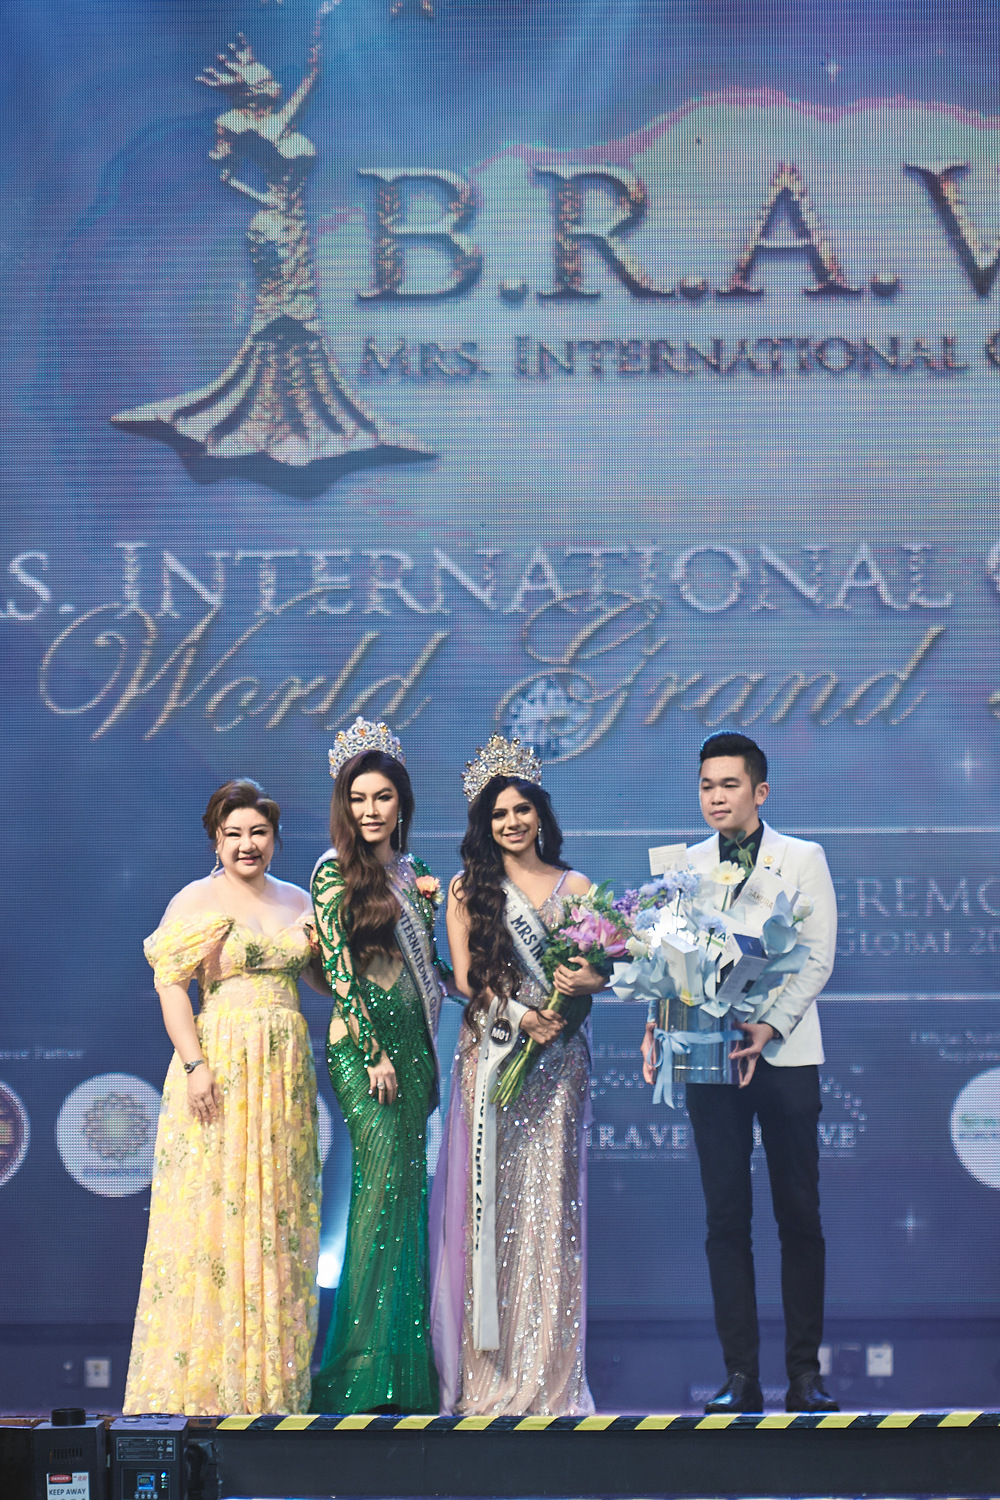 Hoa hậu Trần Hà Trâm Anh chấm thi cuộc thi quốc tế, bật khóc khi trao vương miện - Ảnh 5.